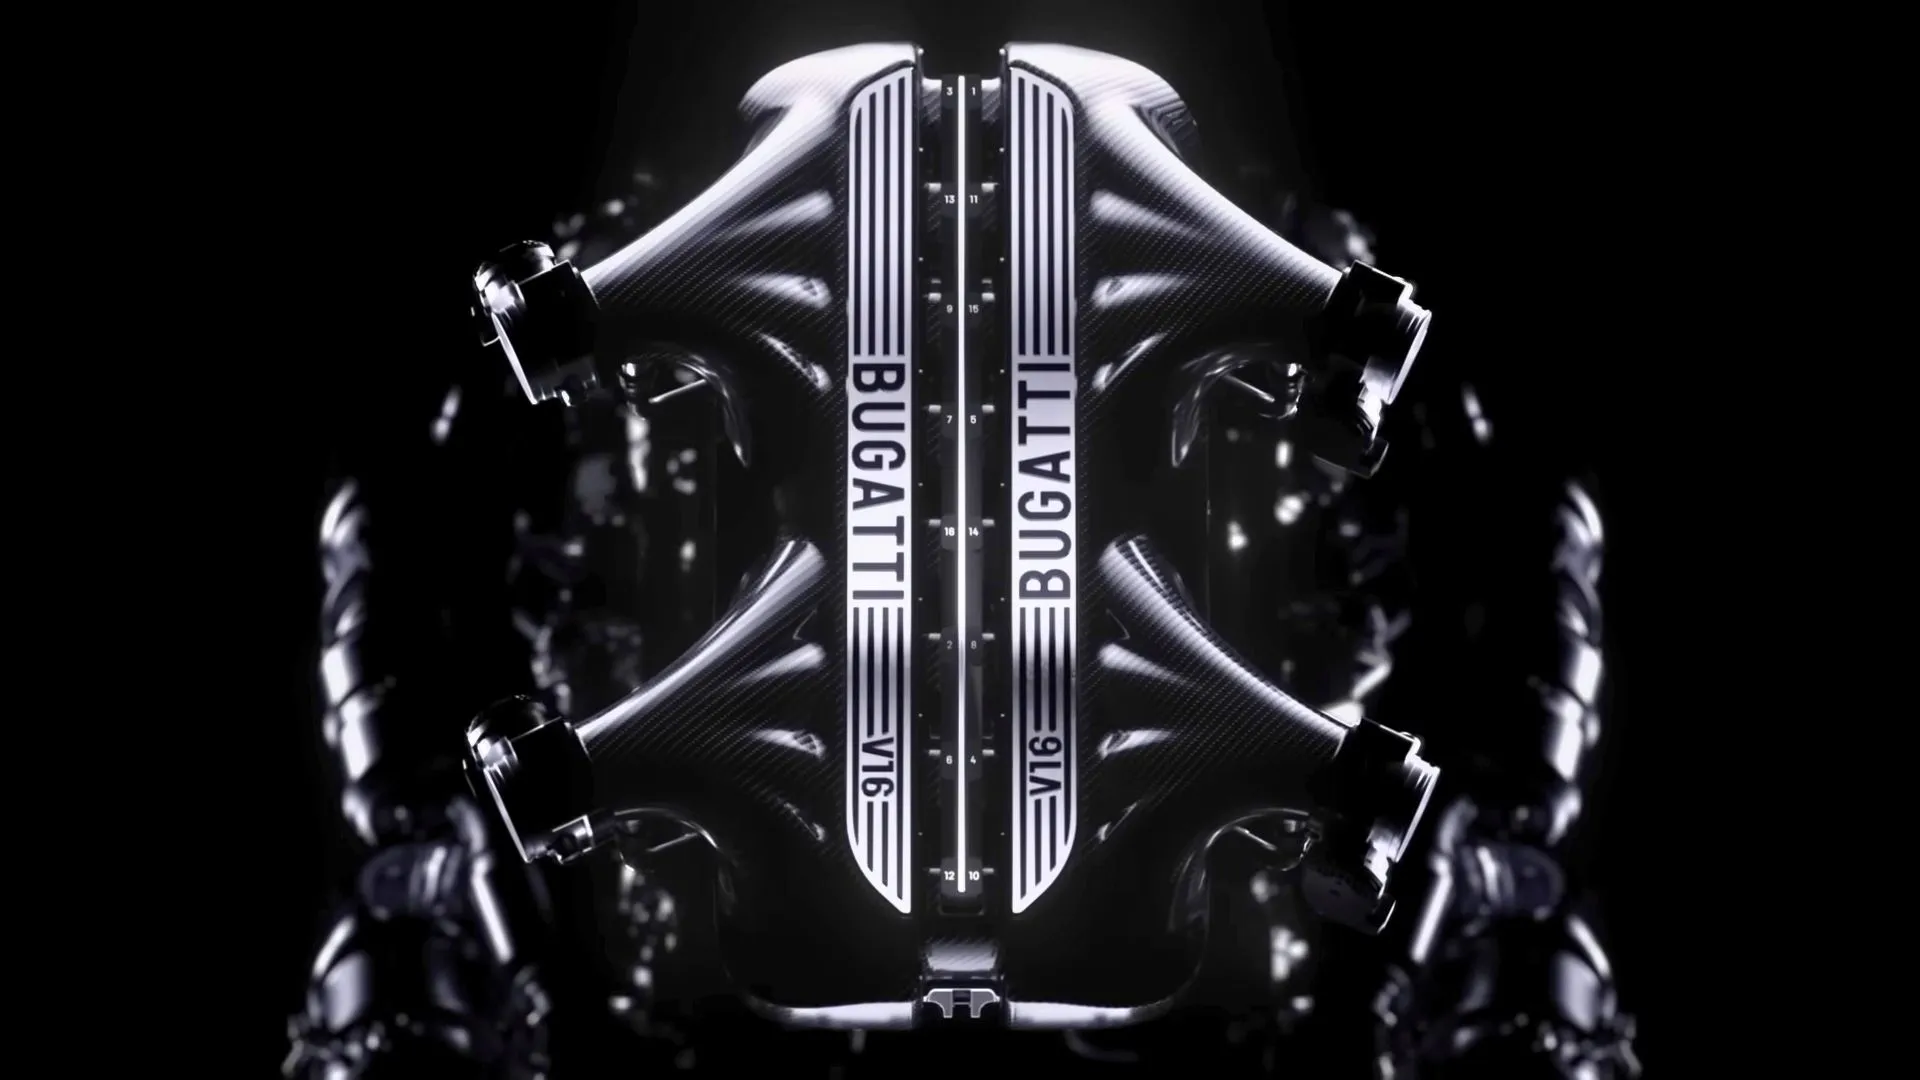 Bugatti ha anunciado un nuevo motor híbrido V16 que permite al coche alcanzar velocidades de hasta 445 km/h